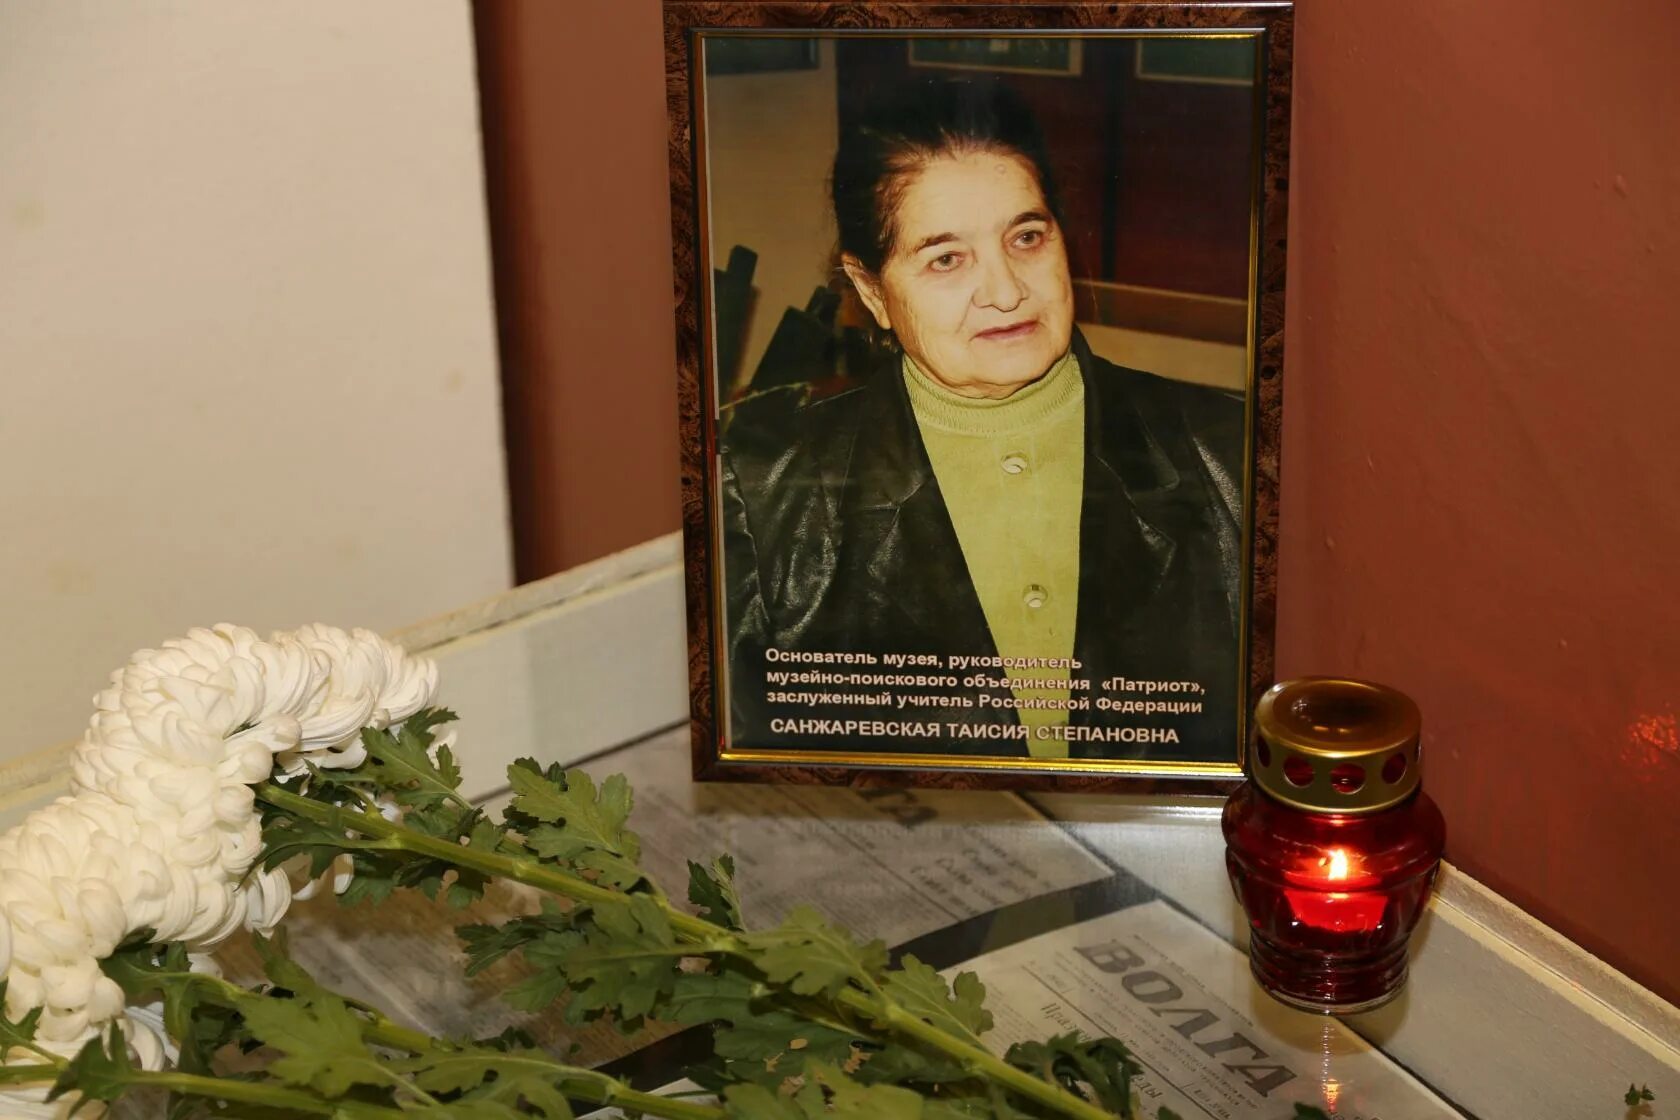 Аракелян талида степановна умерла. Вечер памяти руководителя. Заслуженный учитель Кубани.